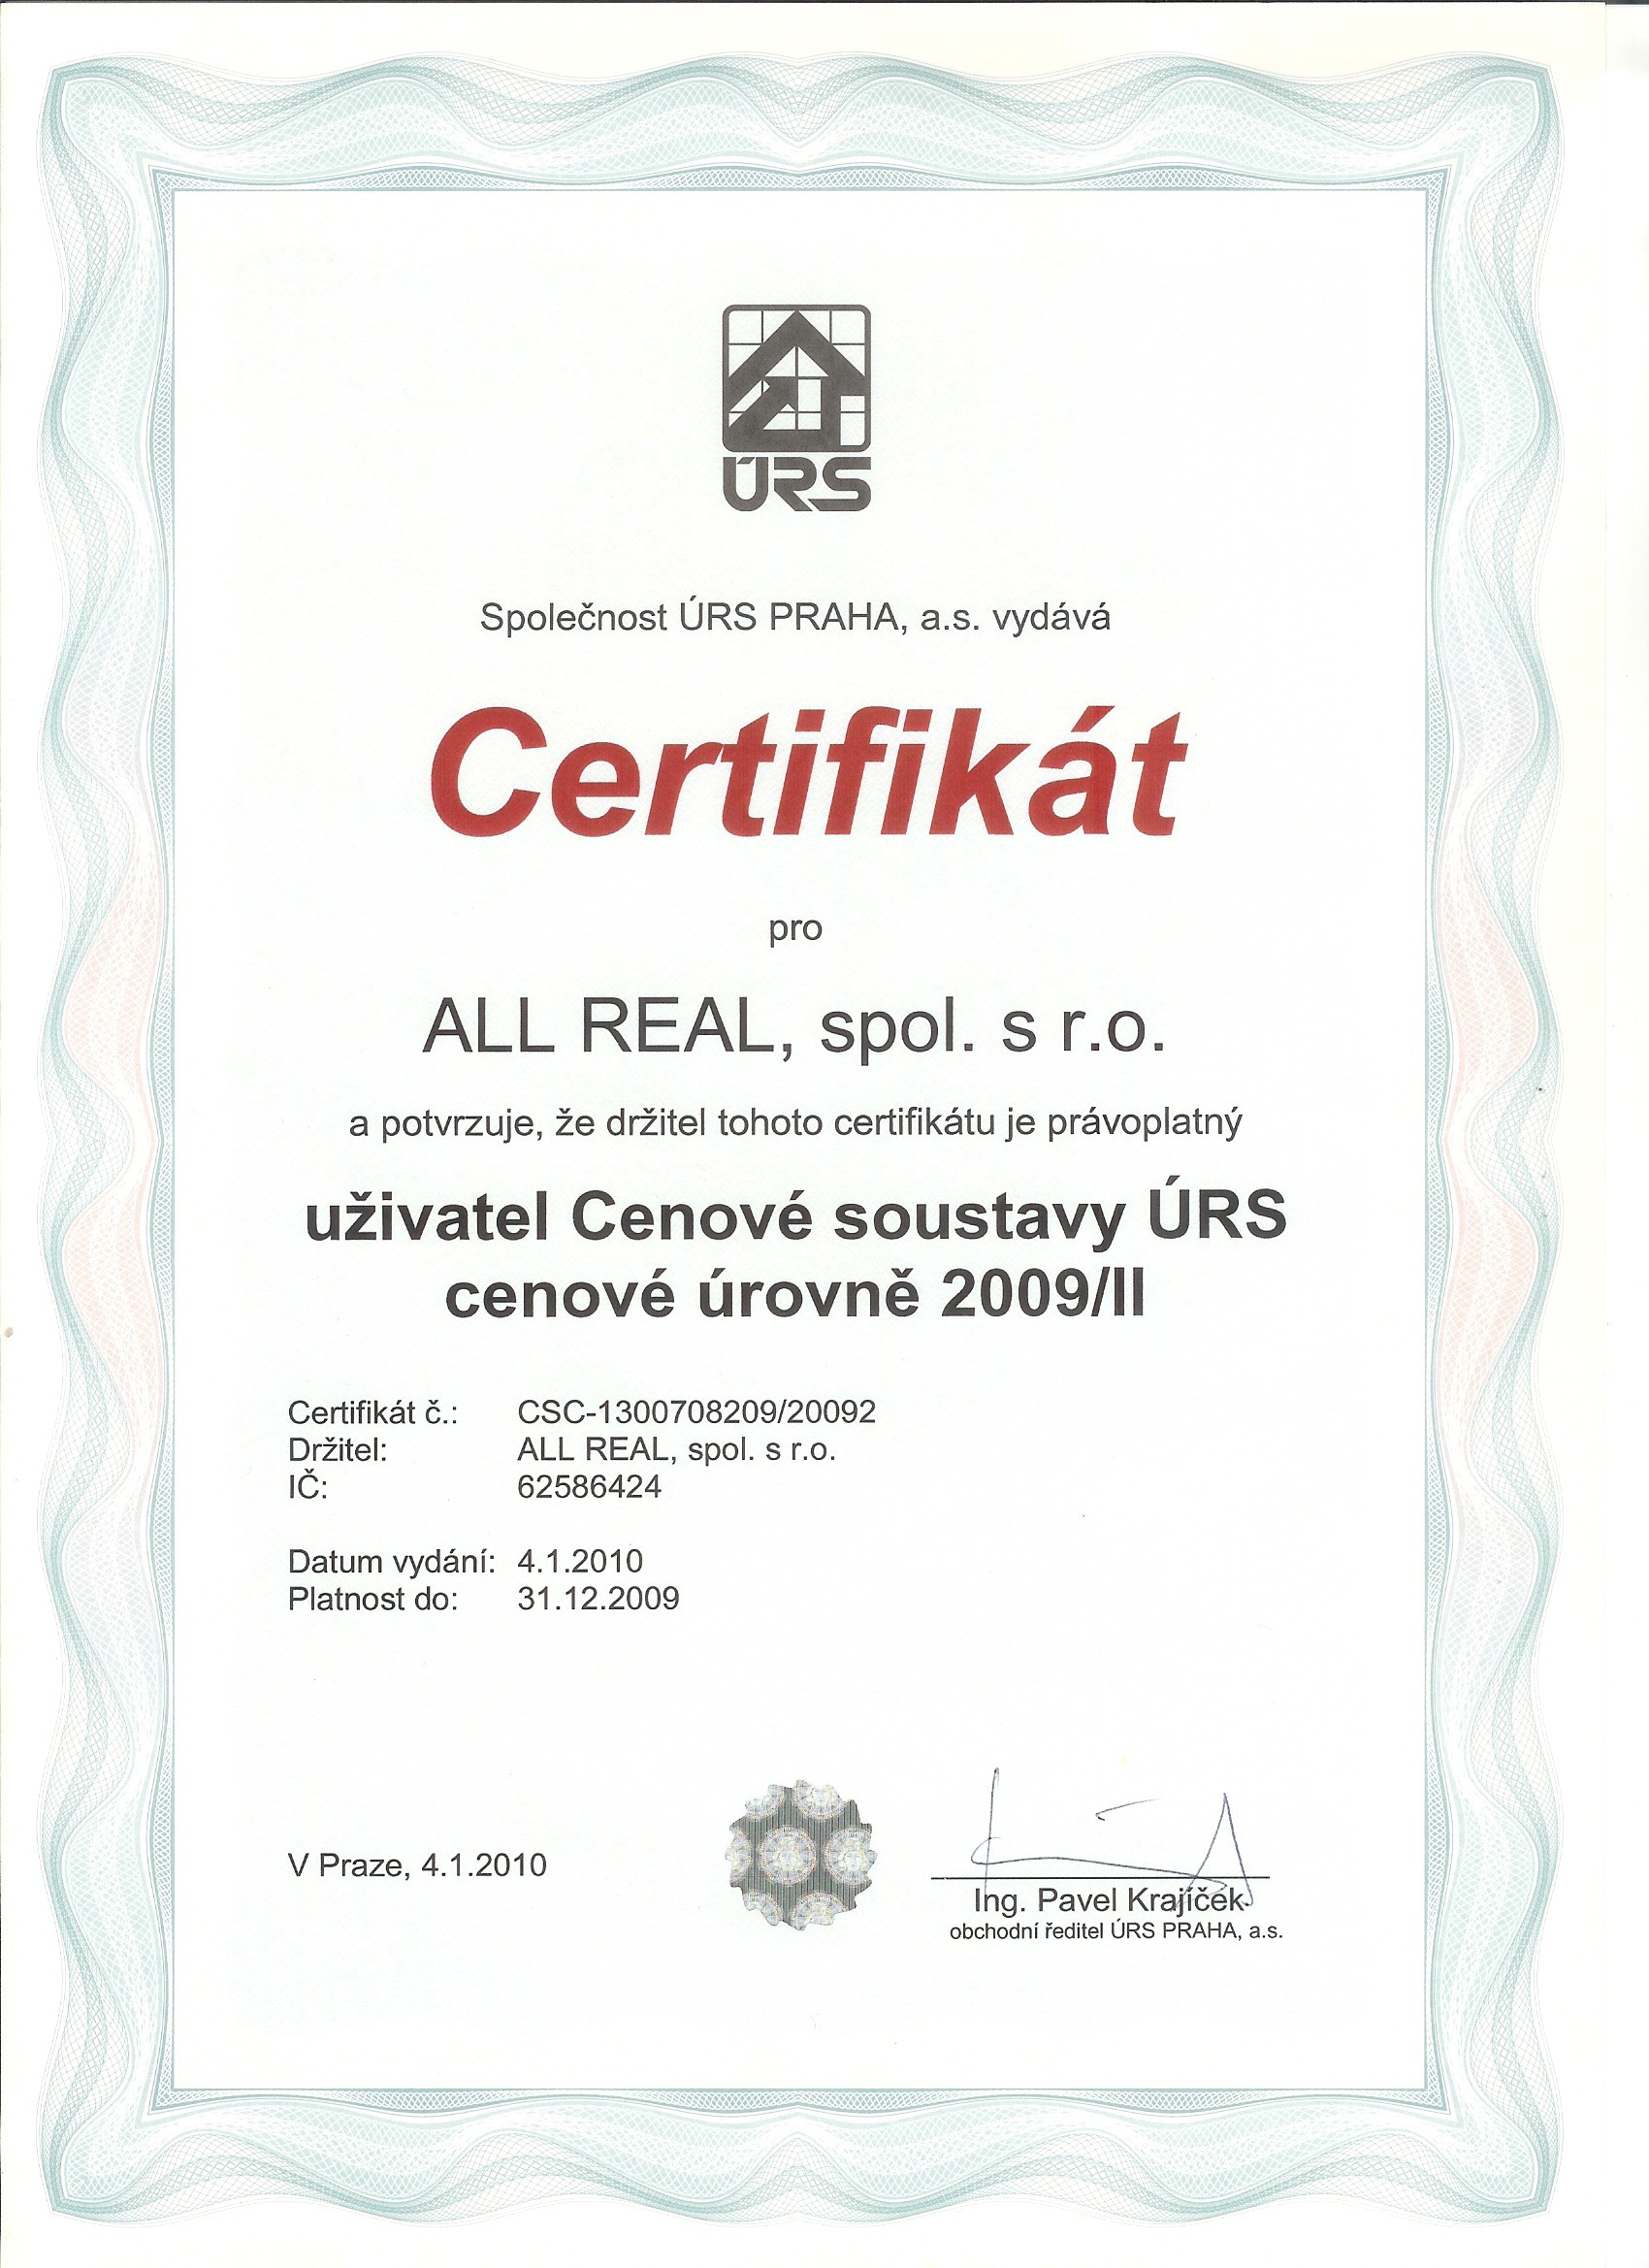 Certifikt URS